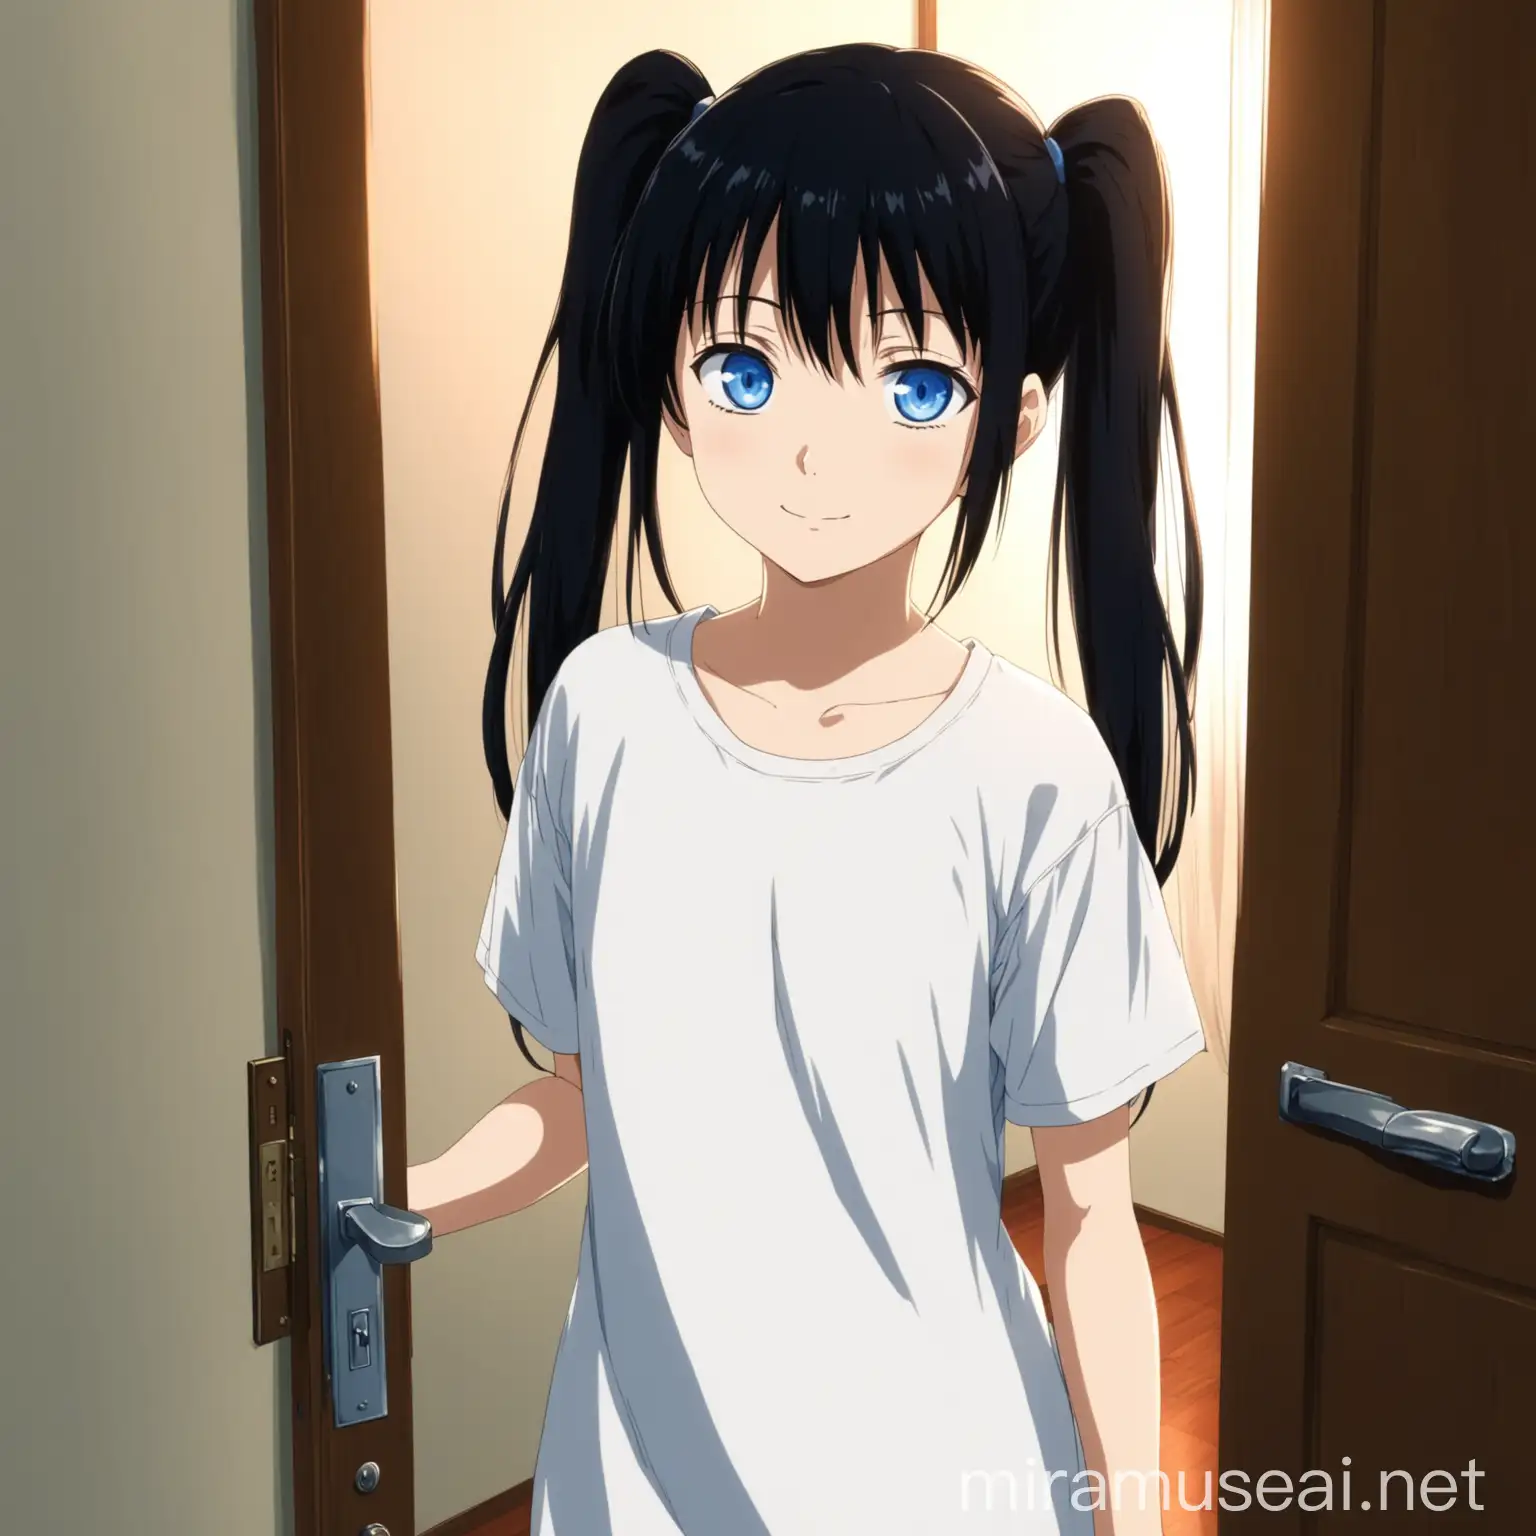 Anime Girl Opening Door in Cozy Living Room